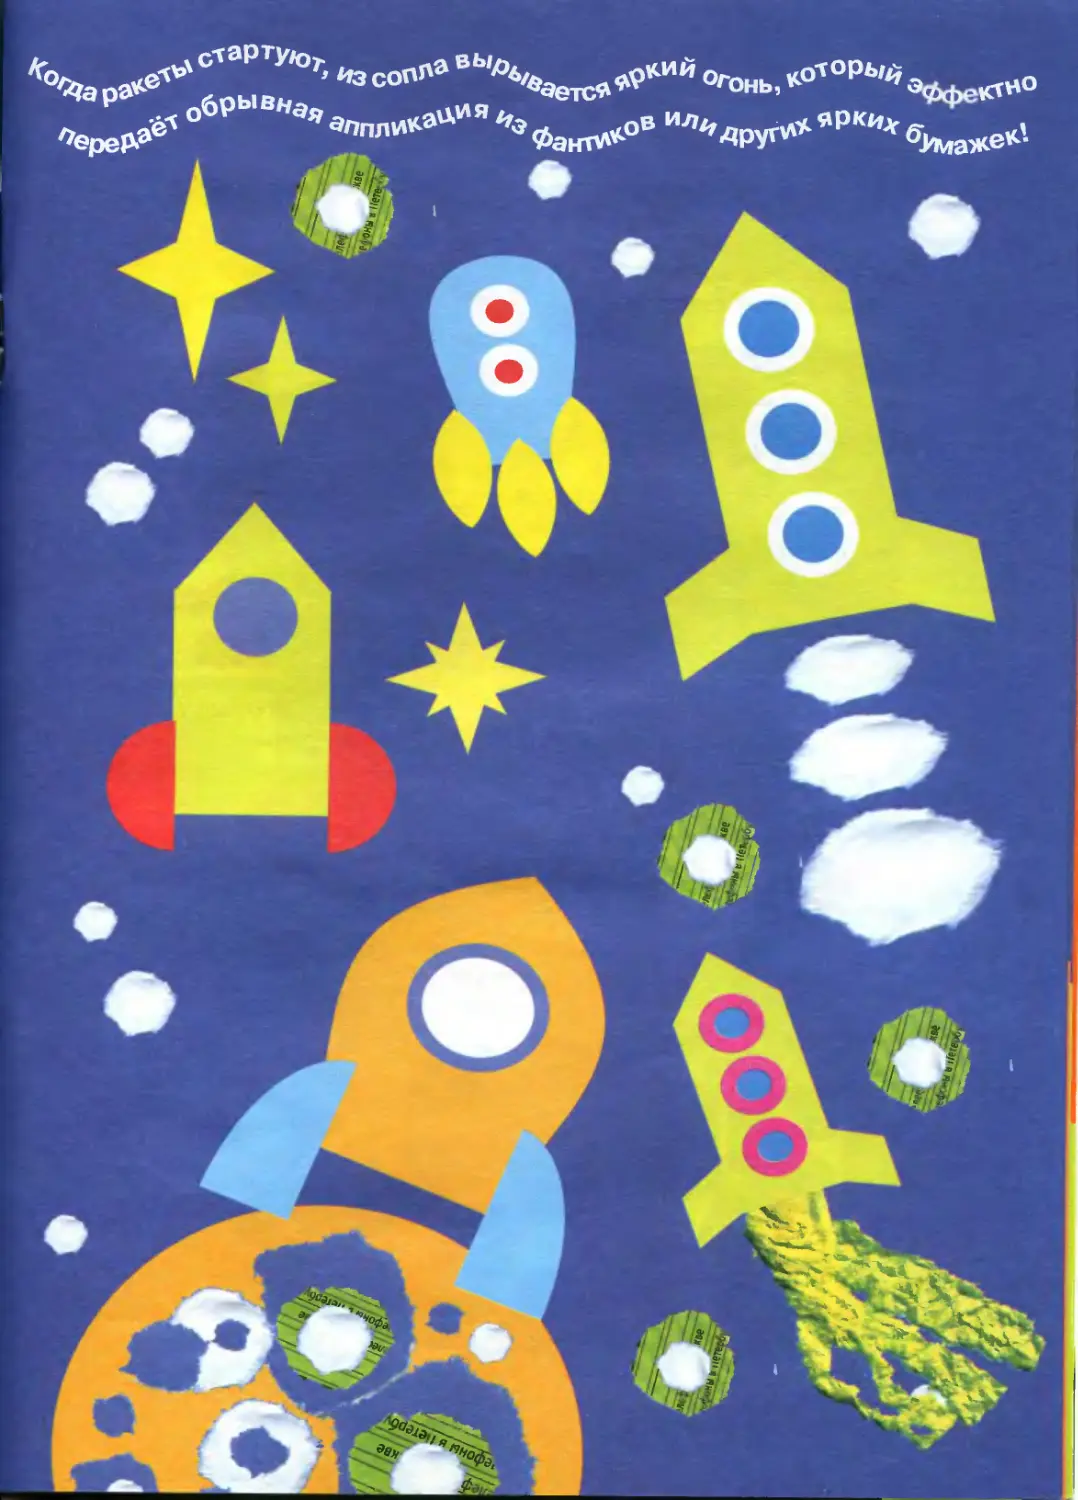 Аппликация на тему космонавтики. Детские аппликации про космос. Поделки на тему космос. Аппликация космос для детей. Объемная аппликация космос.